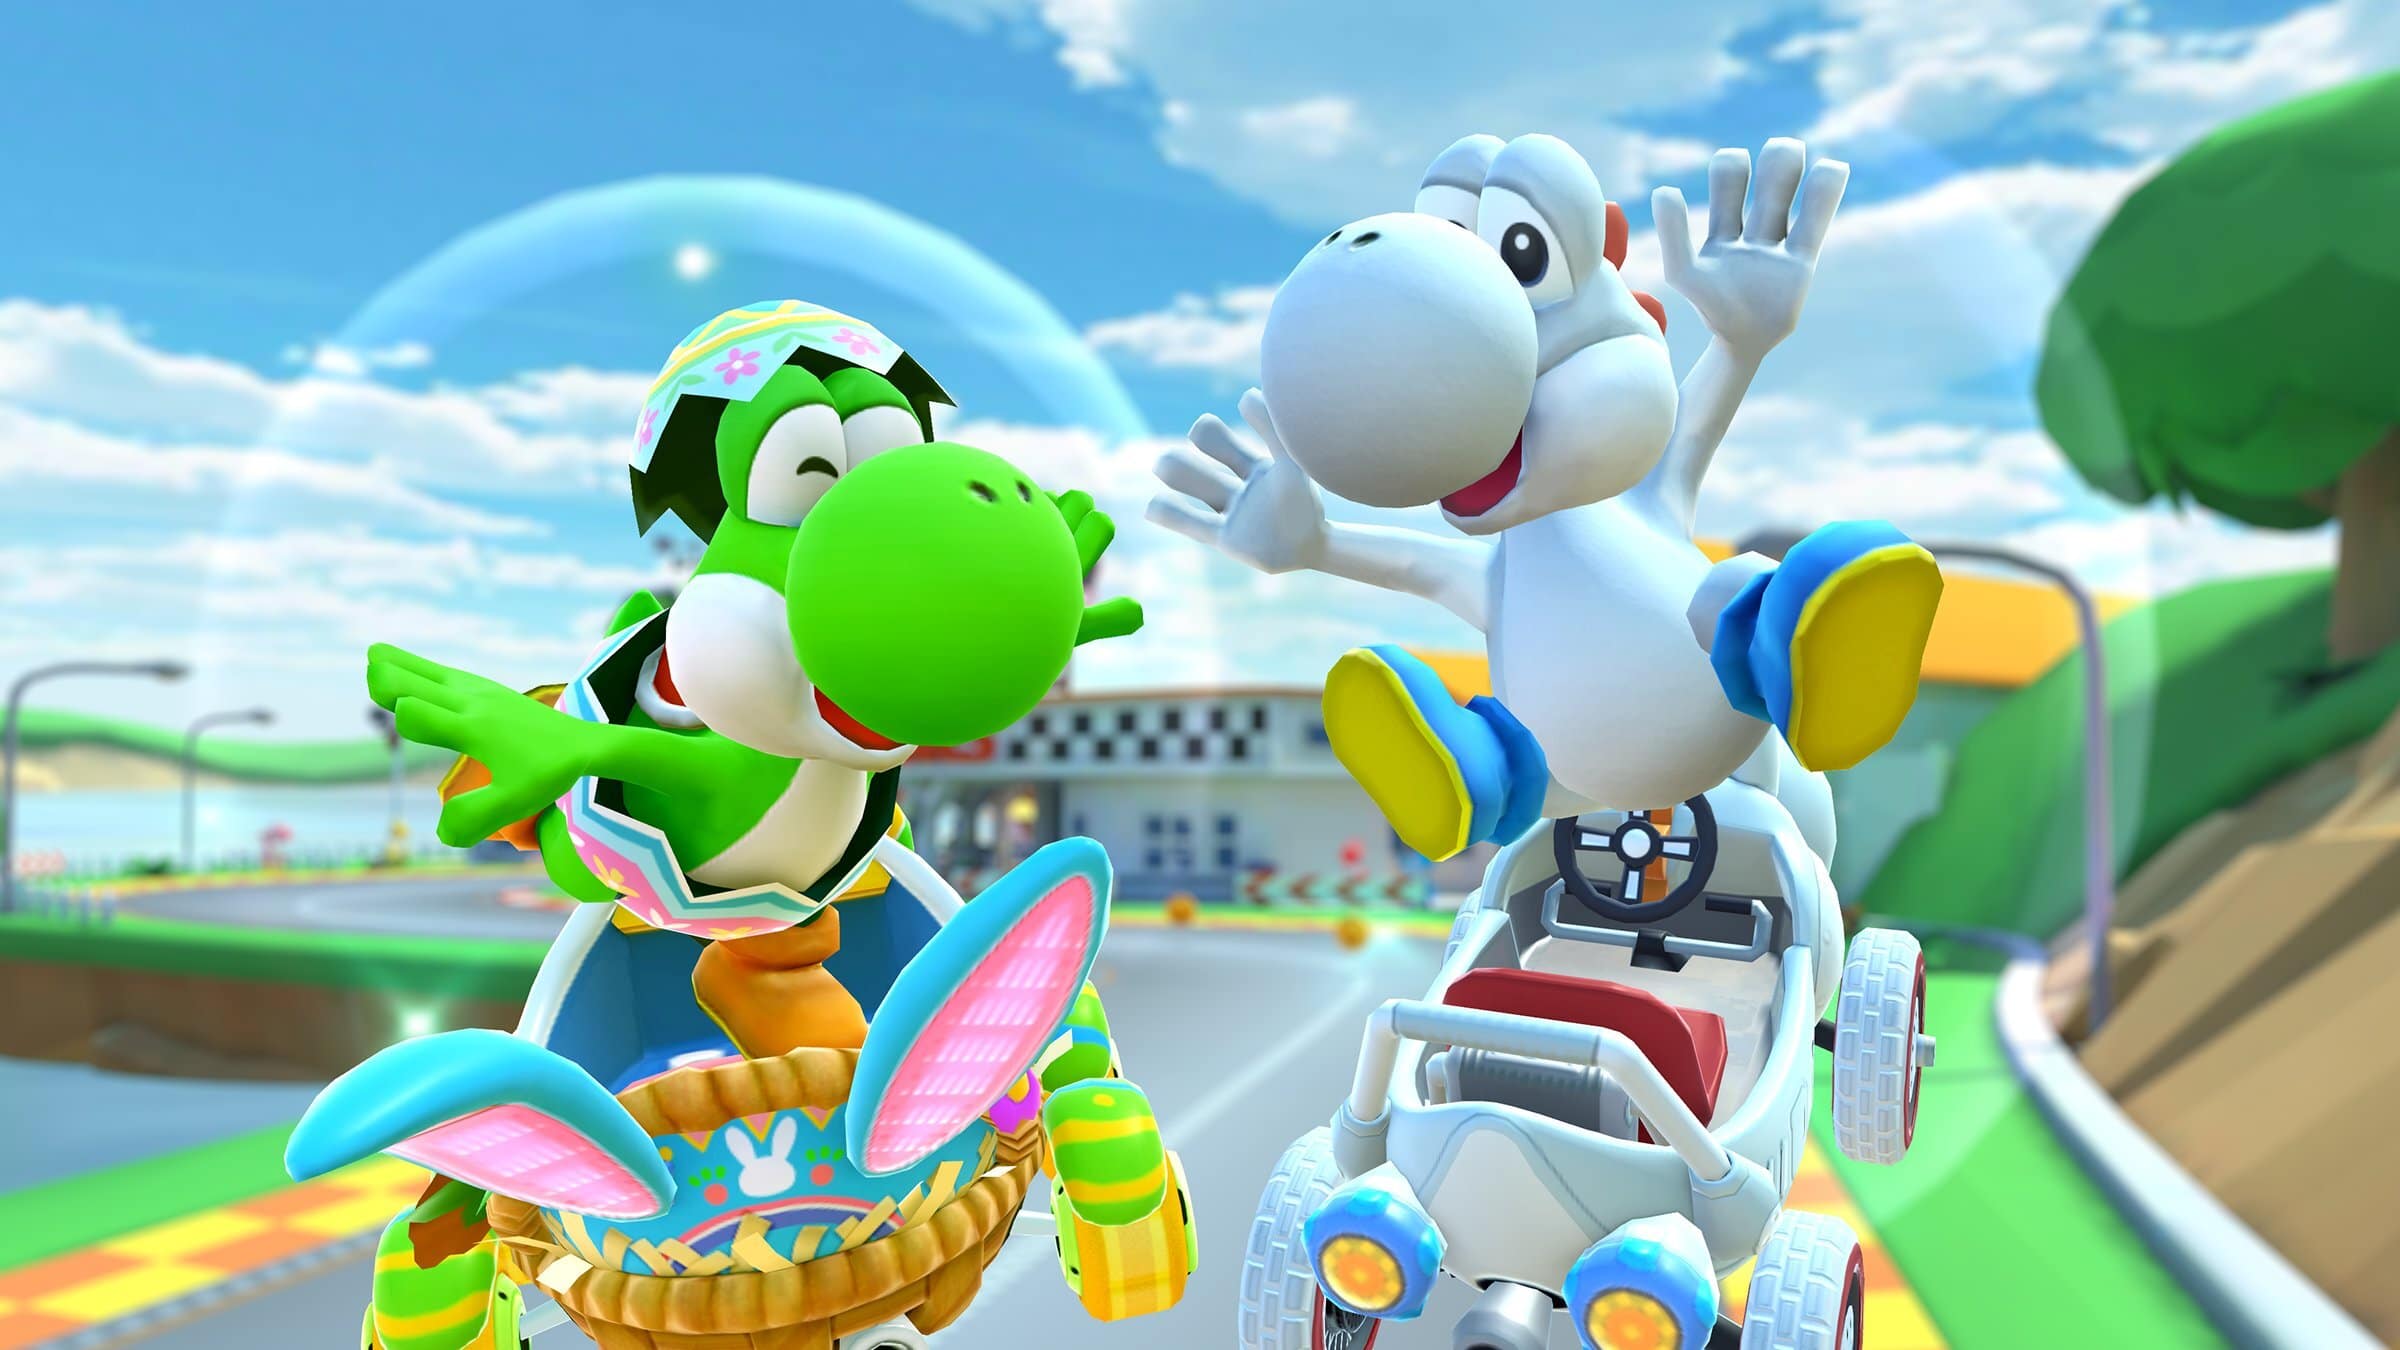 Ya está disponible la temporada de Yoshi en Mario Kart Tour, con nuevas variantes de color de Yoshi y Birdo